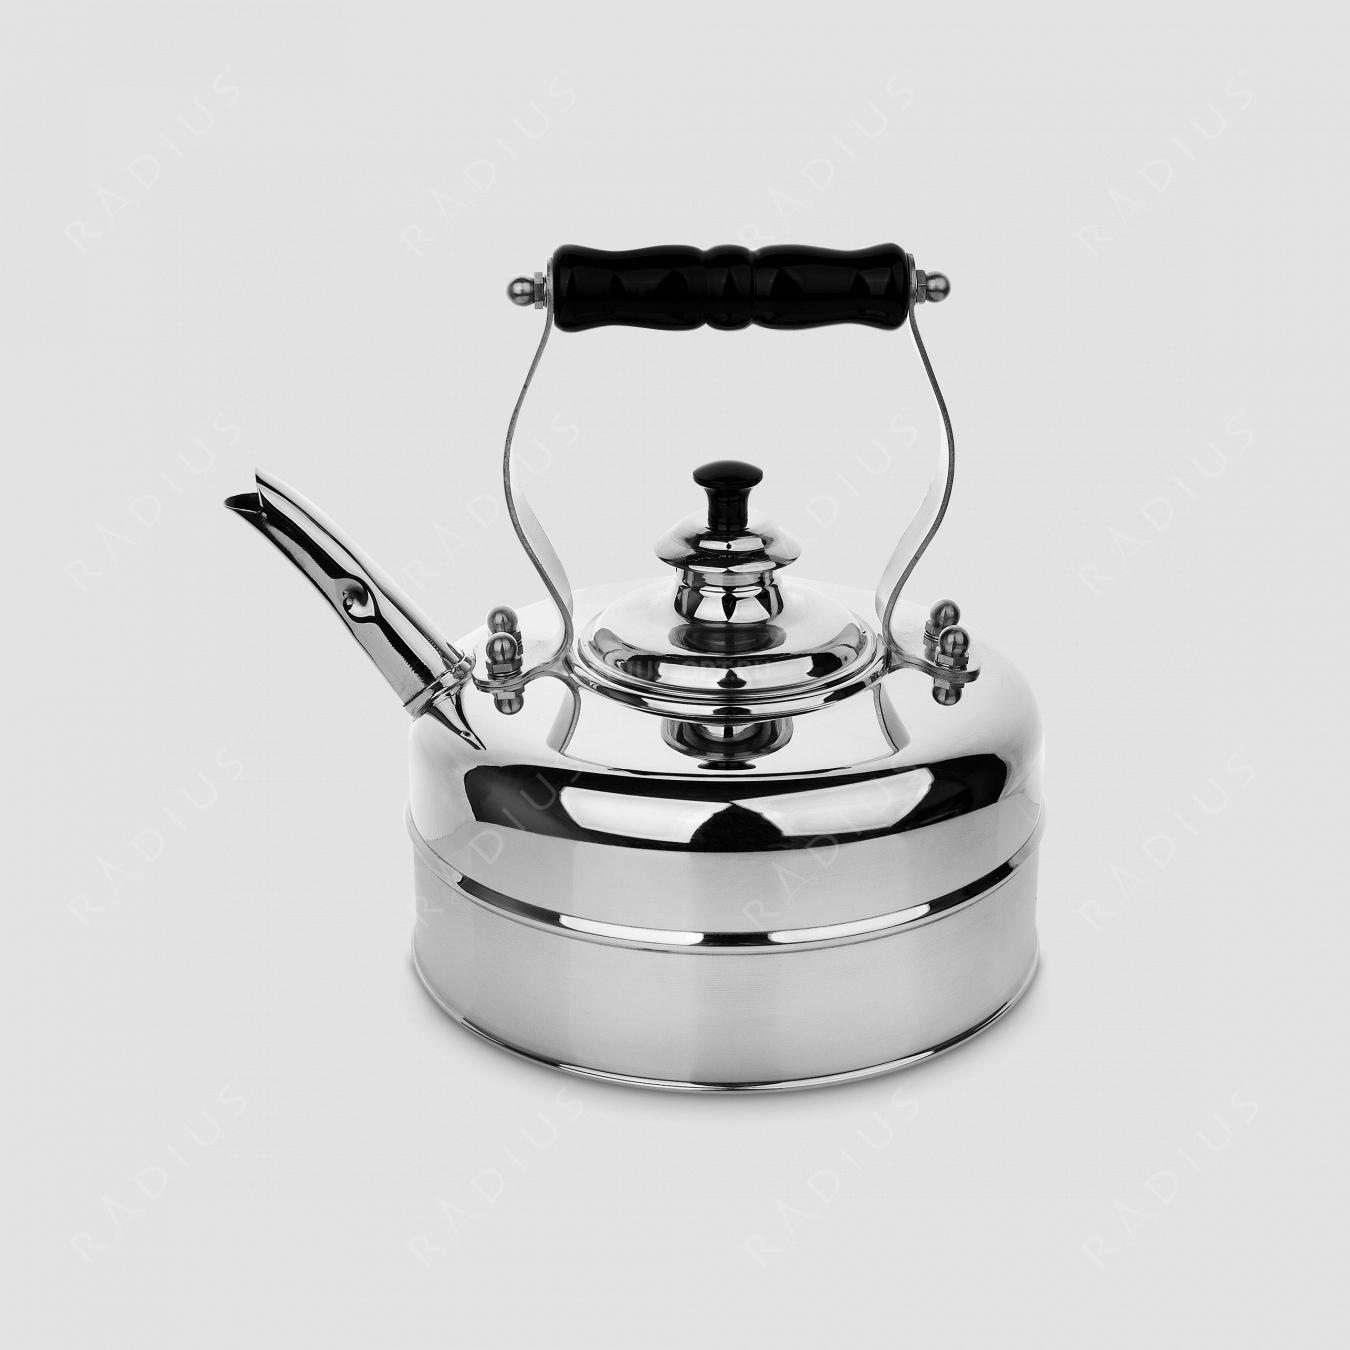 Чайник для плиты (электро) эдвардианской ручной работы, медь с хромированной отделкой, объем 1,7 л, серия Heritage, RICHMOND, Великобритания